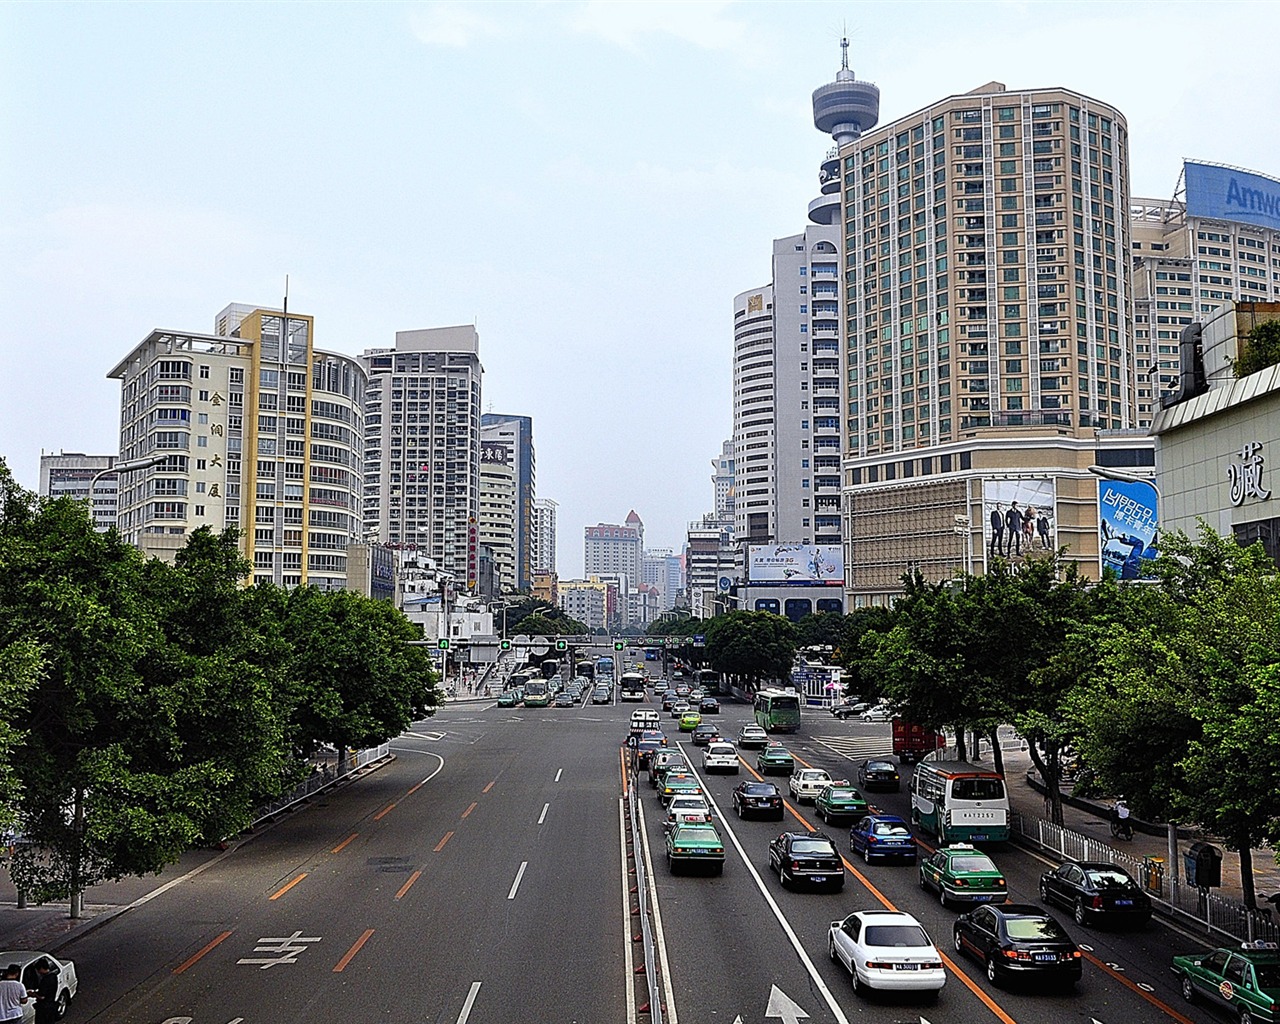 Fuzhou calle con el disparo (foto de Obras del cambio) #6 - 1280x1024